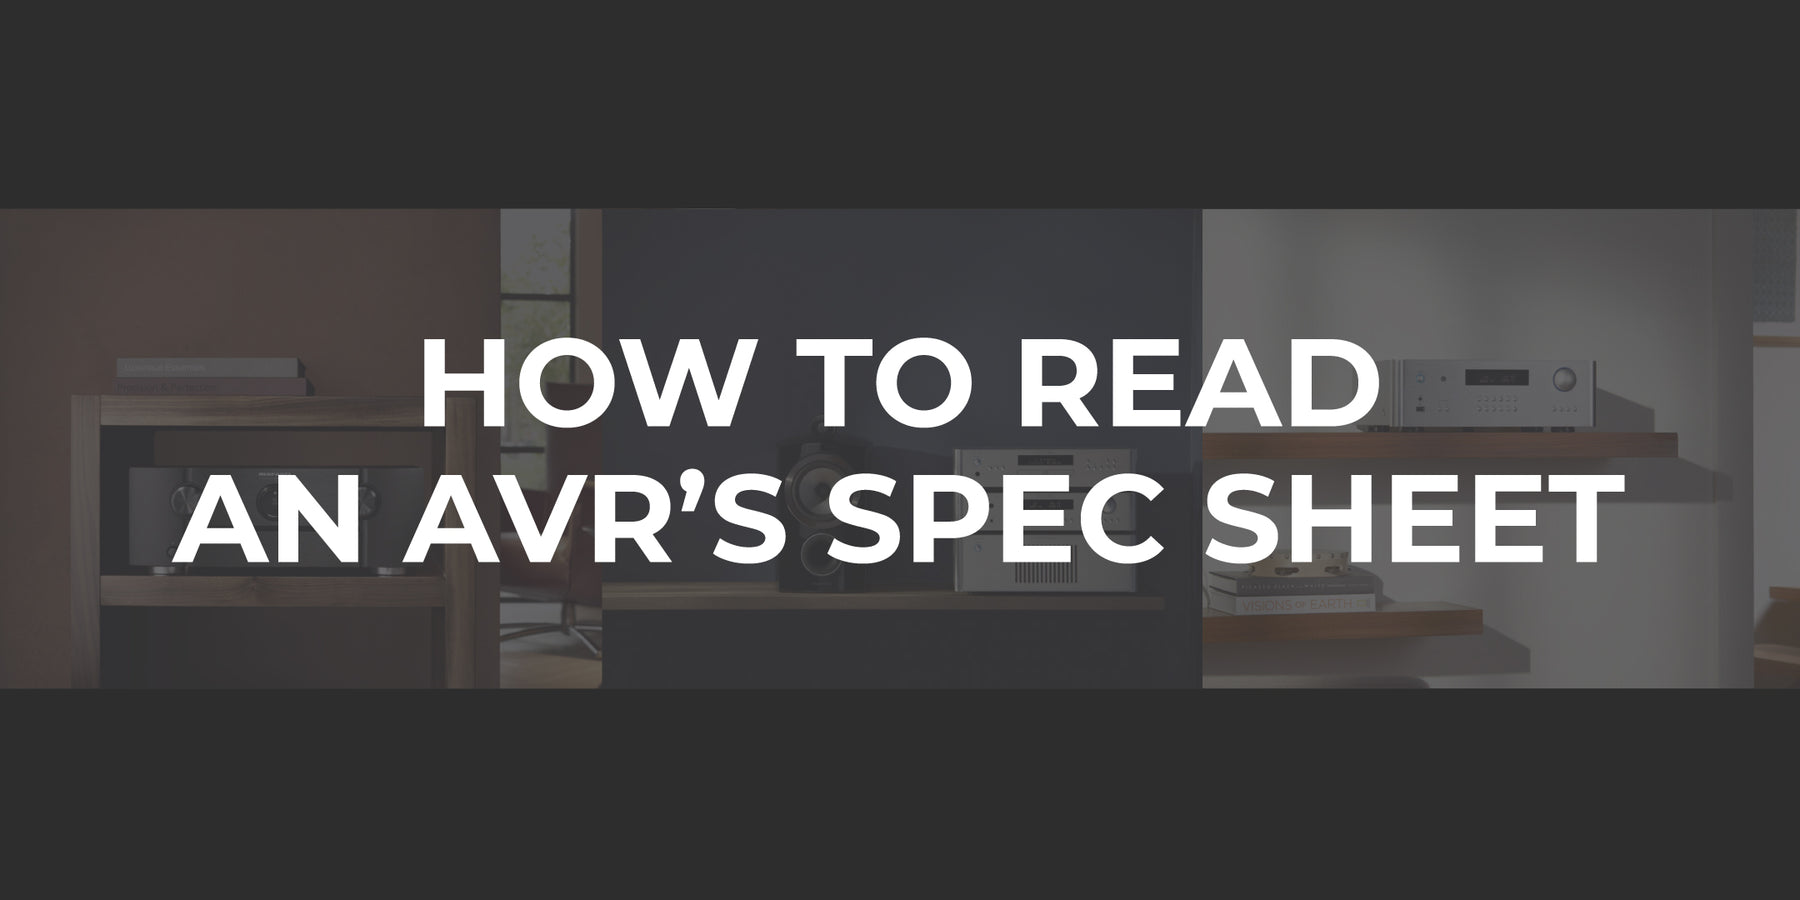 How to read an AVR's spec sheet.